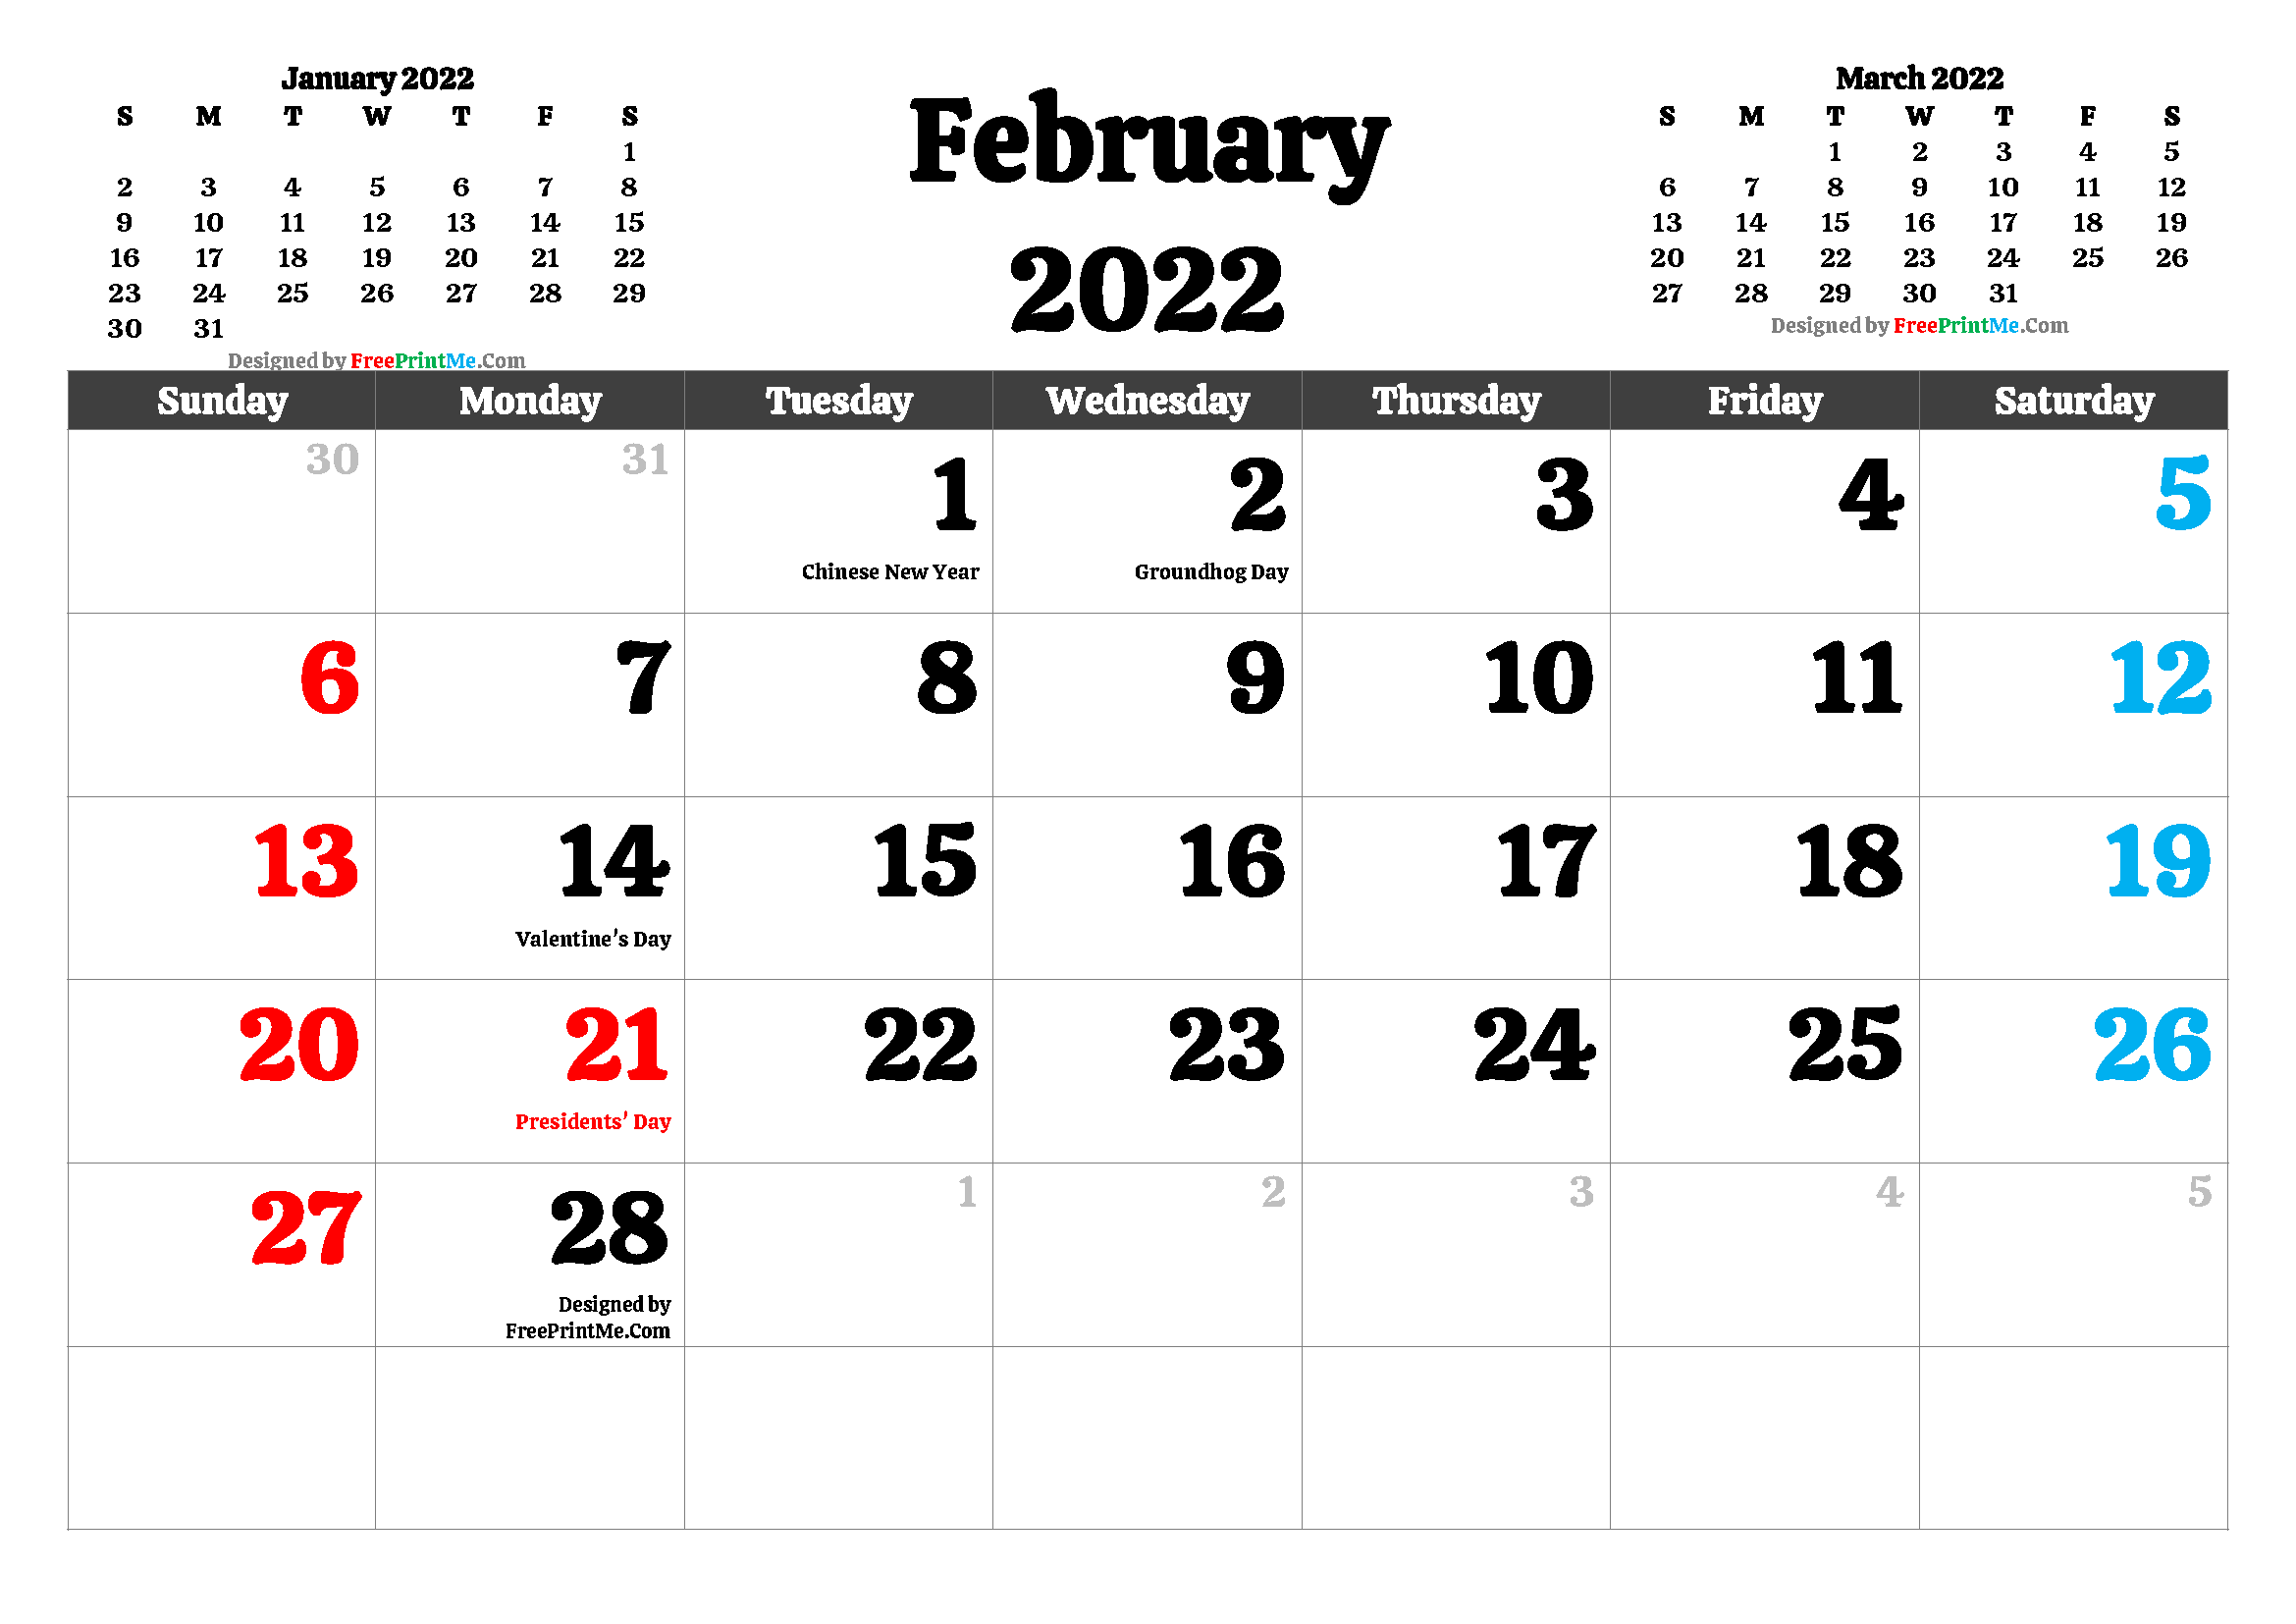 February 2022 Calendar Images Free Printable February 2022 Calendar Pdf And Image